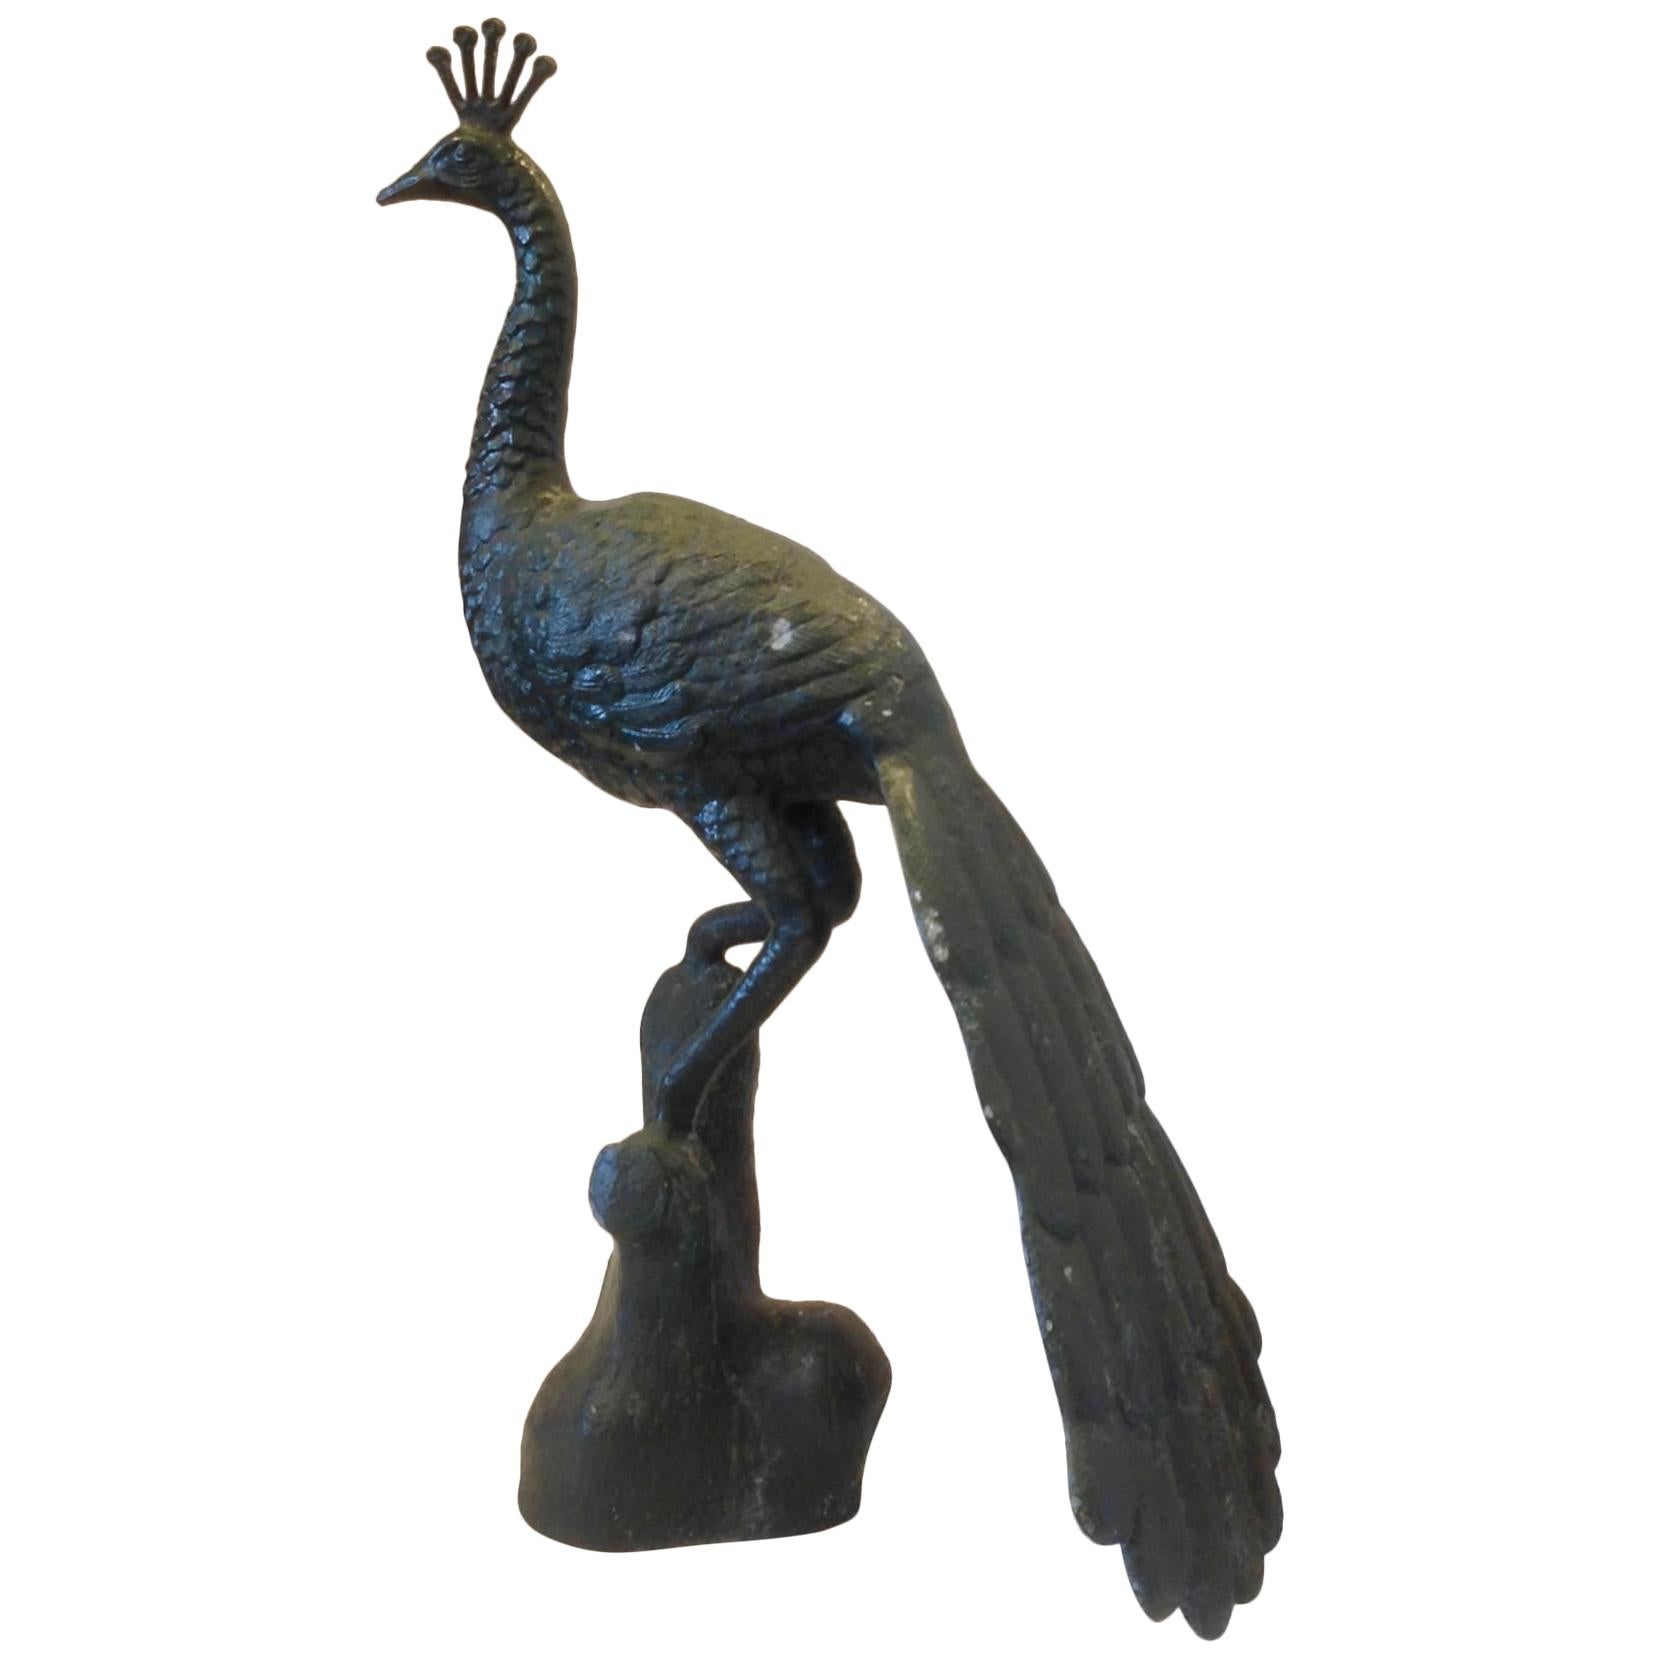 Garden Figure of a Peacock